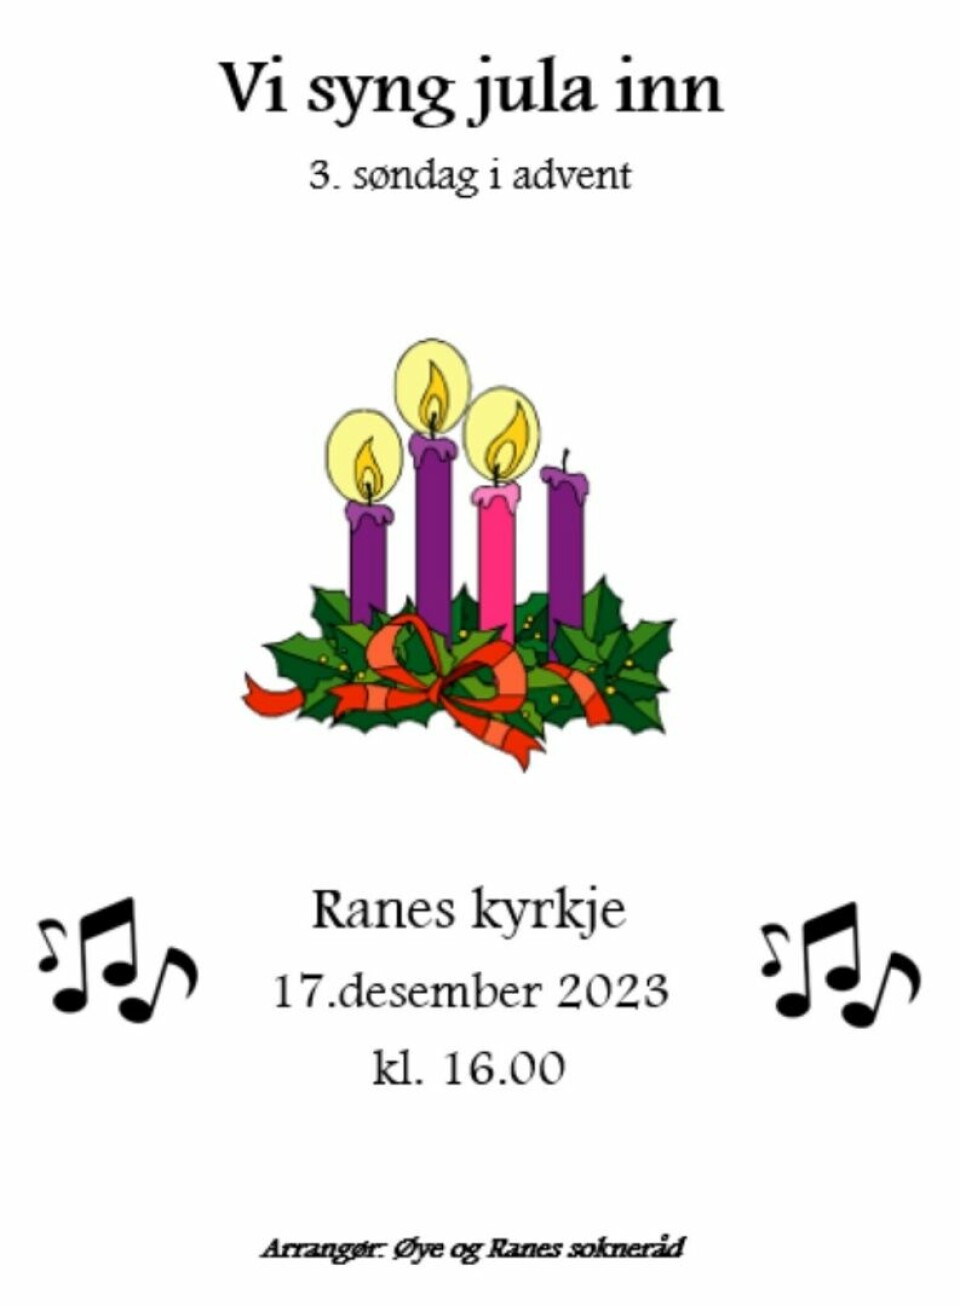 Konsert i Ranes kyrkje 17. desember klokken 16.00